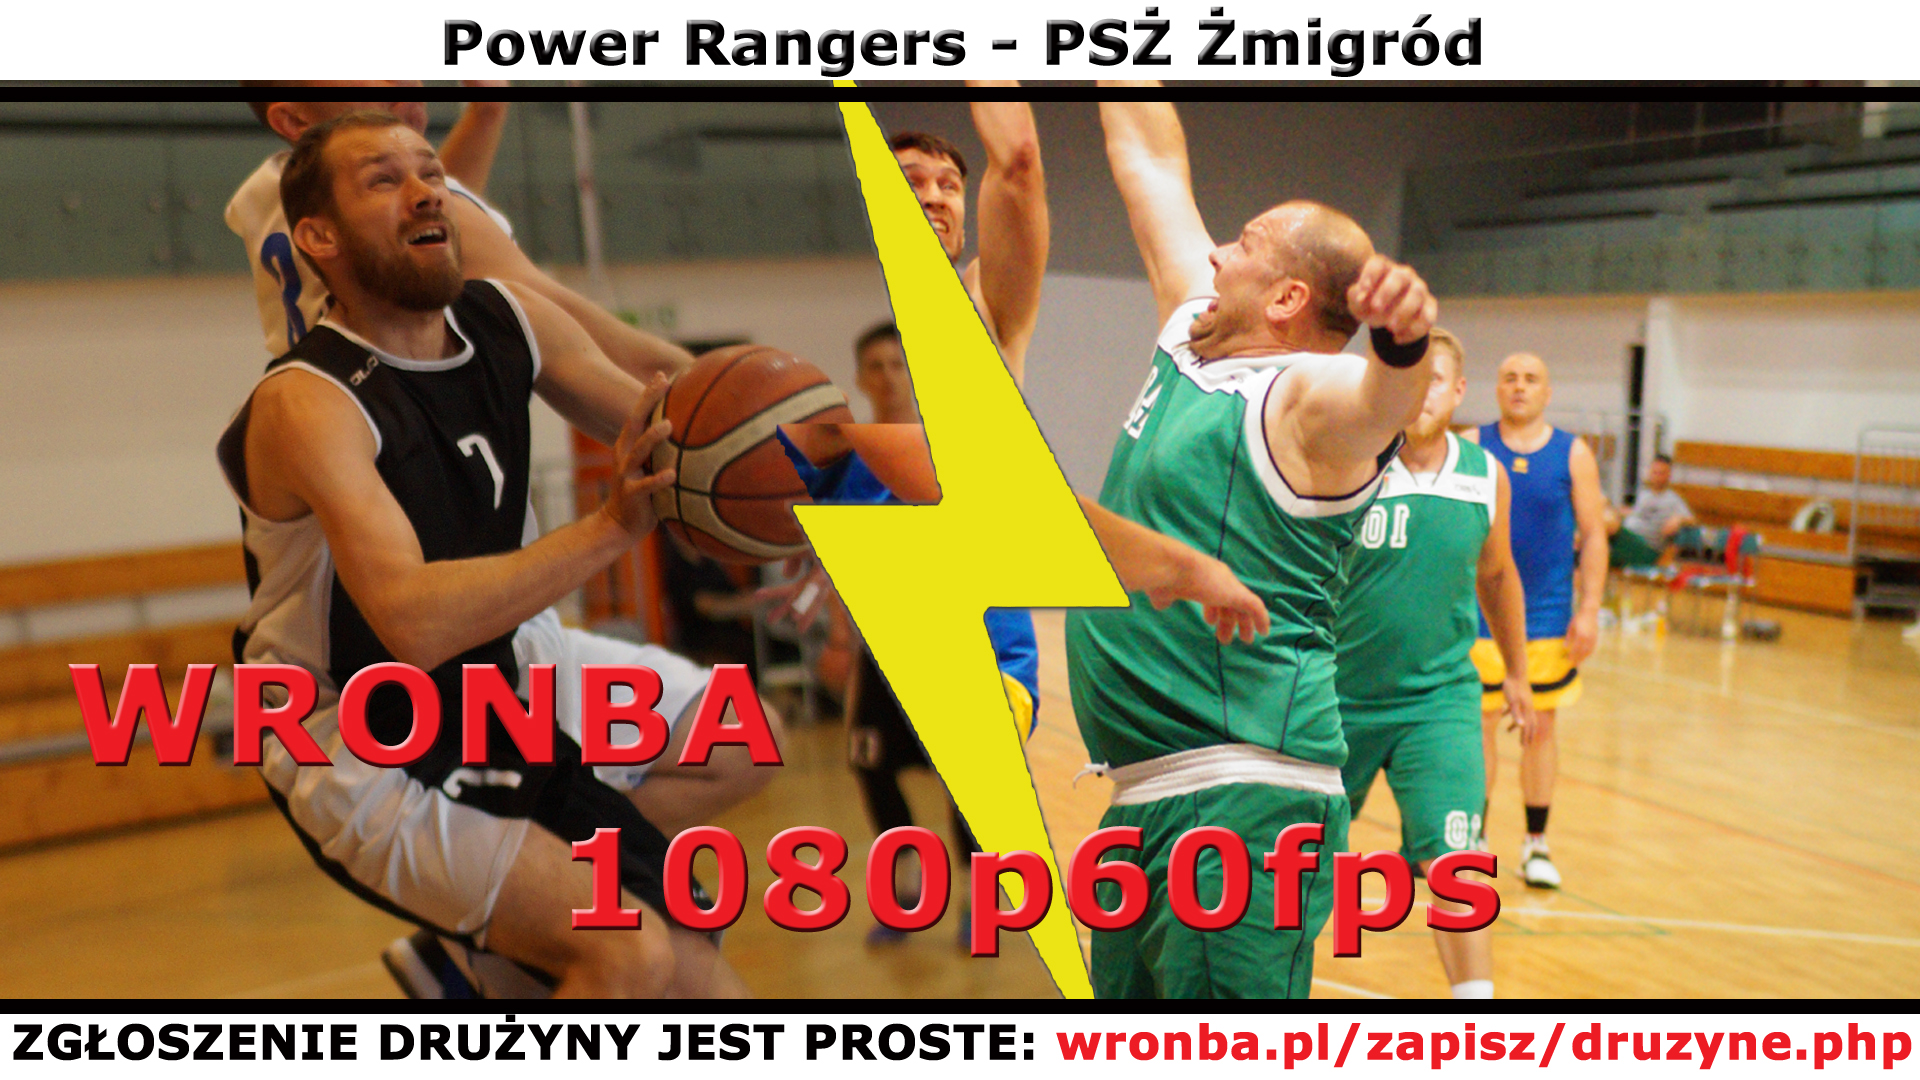 wronba.pl/uploads/wysiwyg/image/youtube_14535_mecz.jpg